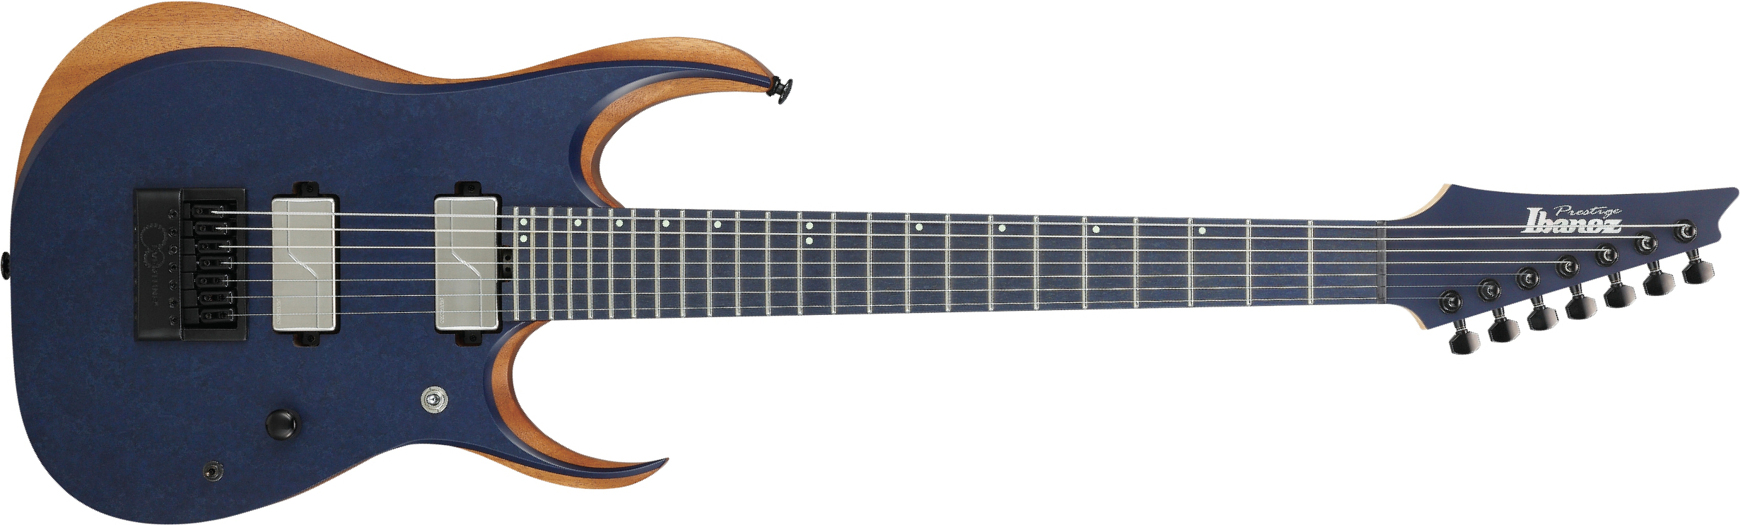 Ibanez Rgdr4527et Prestige Hh Ht Rich - Natural Flat - Str shape electric guitar - Main picture